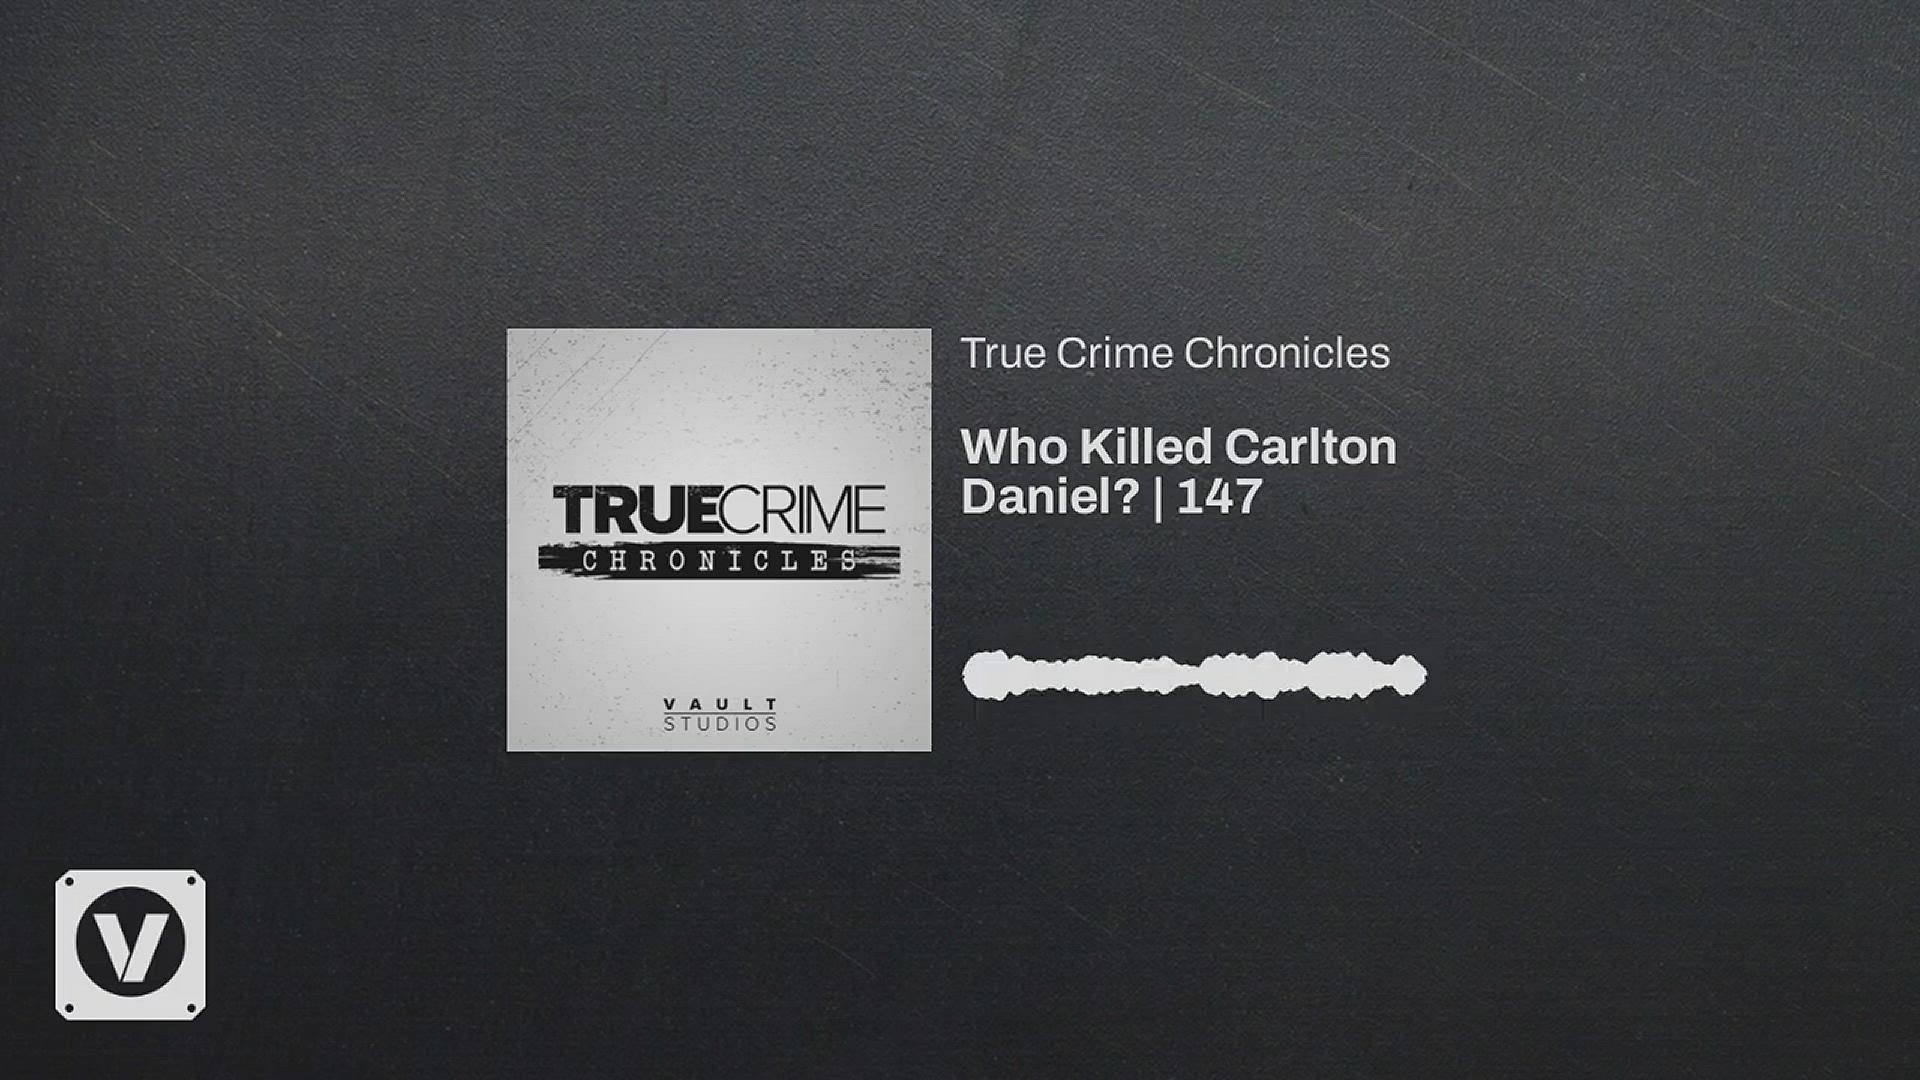 Carlton Daniel was killed in early November of 2003 in Little Rock.